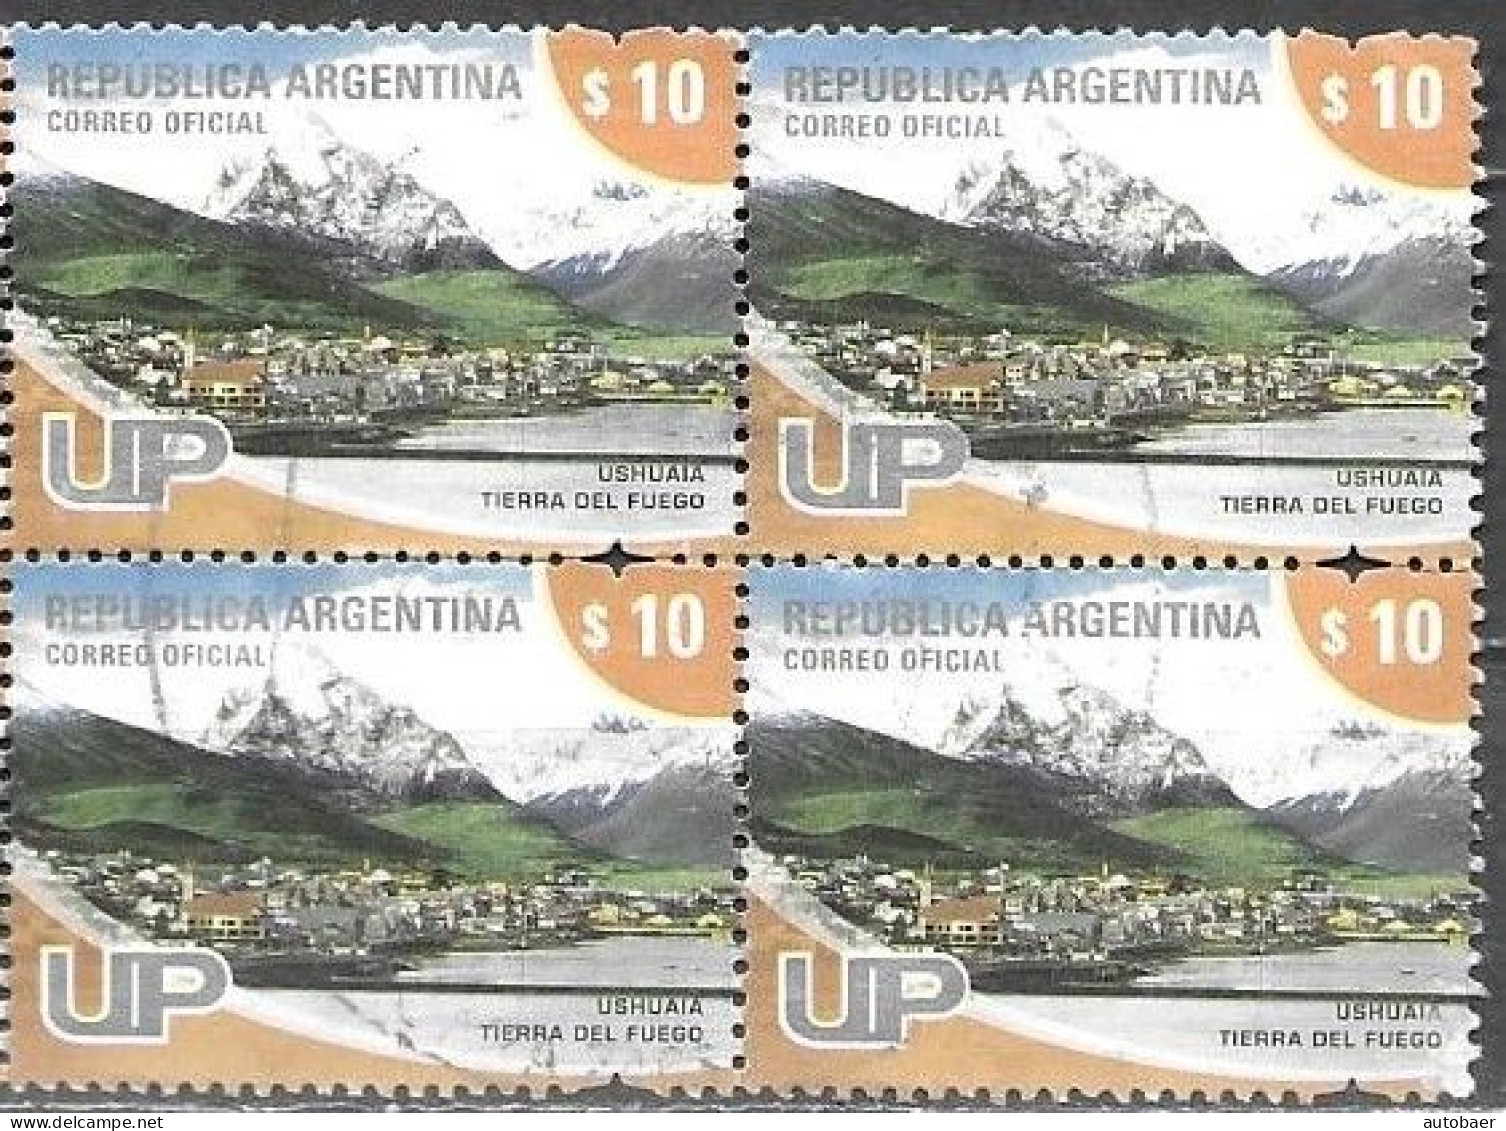 Argentina 2008 Definitives U.P. UP Tourism Ushuaia Mi. 3230A Bloc Of 4 Used Cancelled Gestempelt Oblitéré - Gebraucht